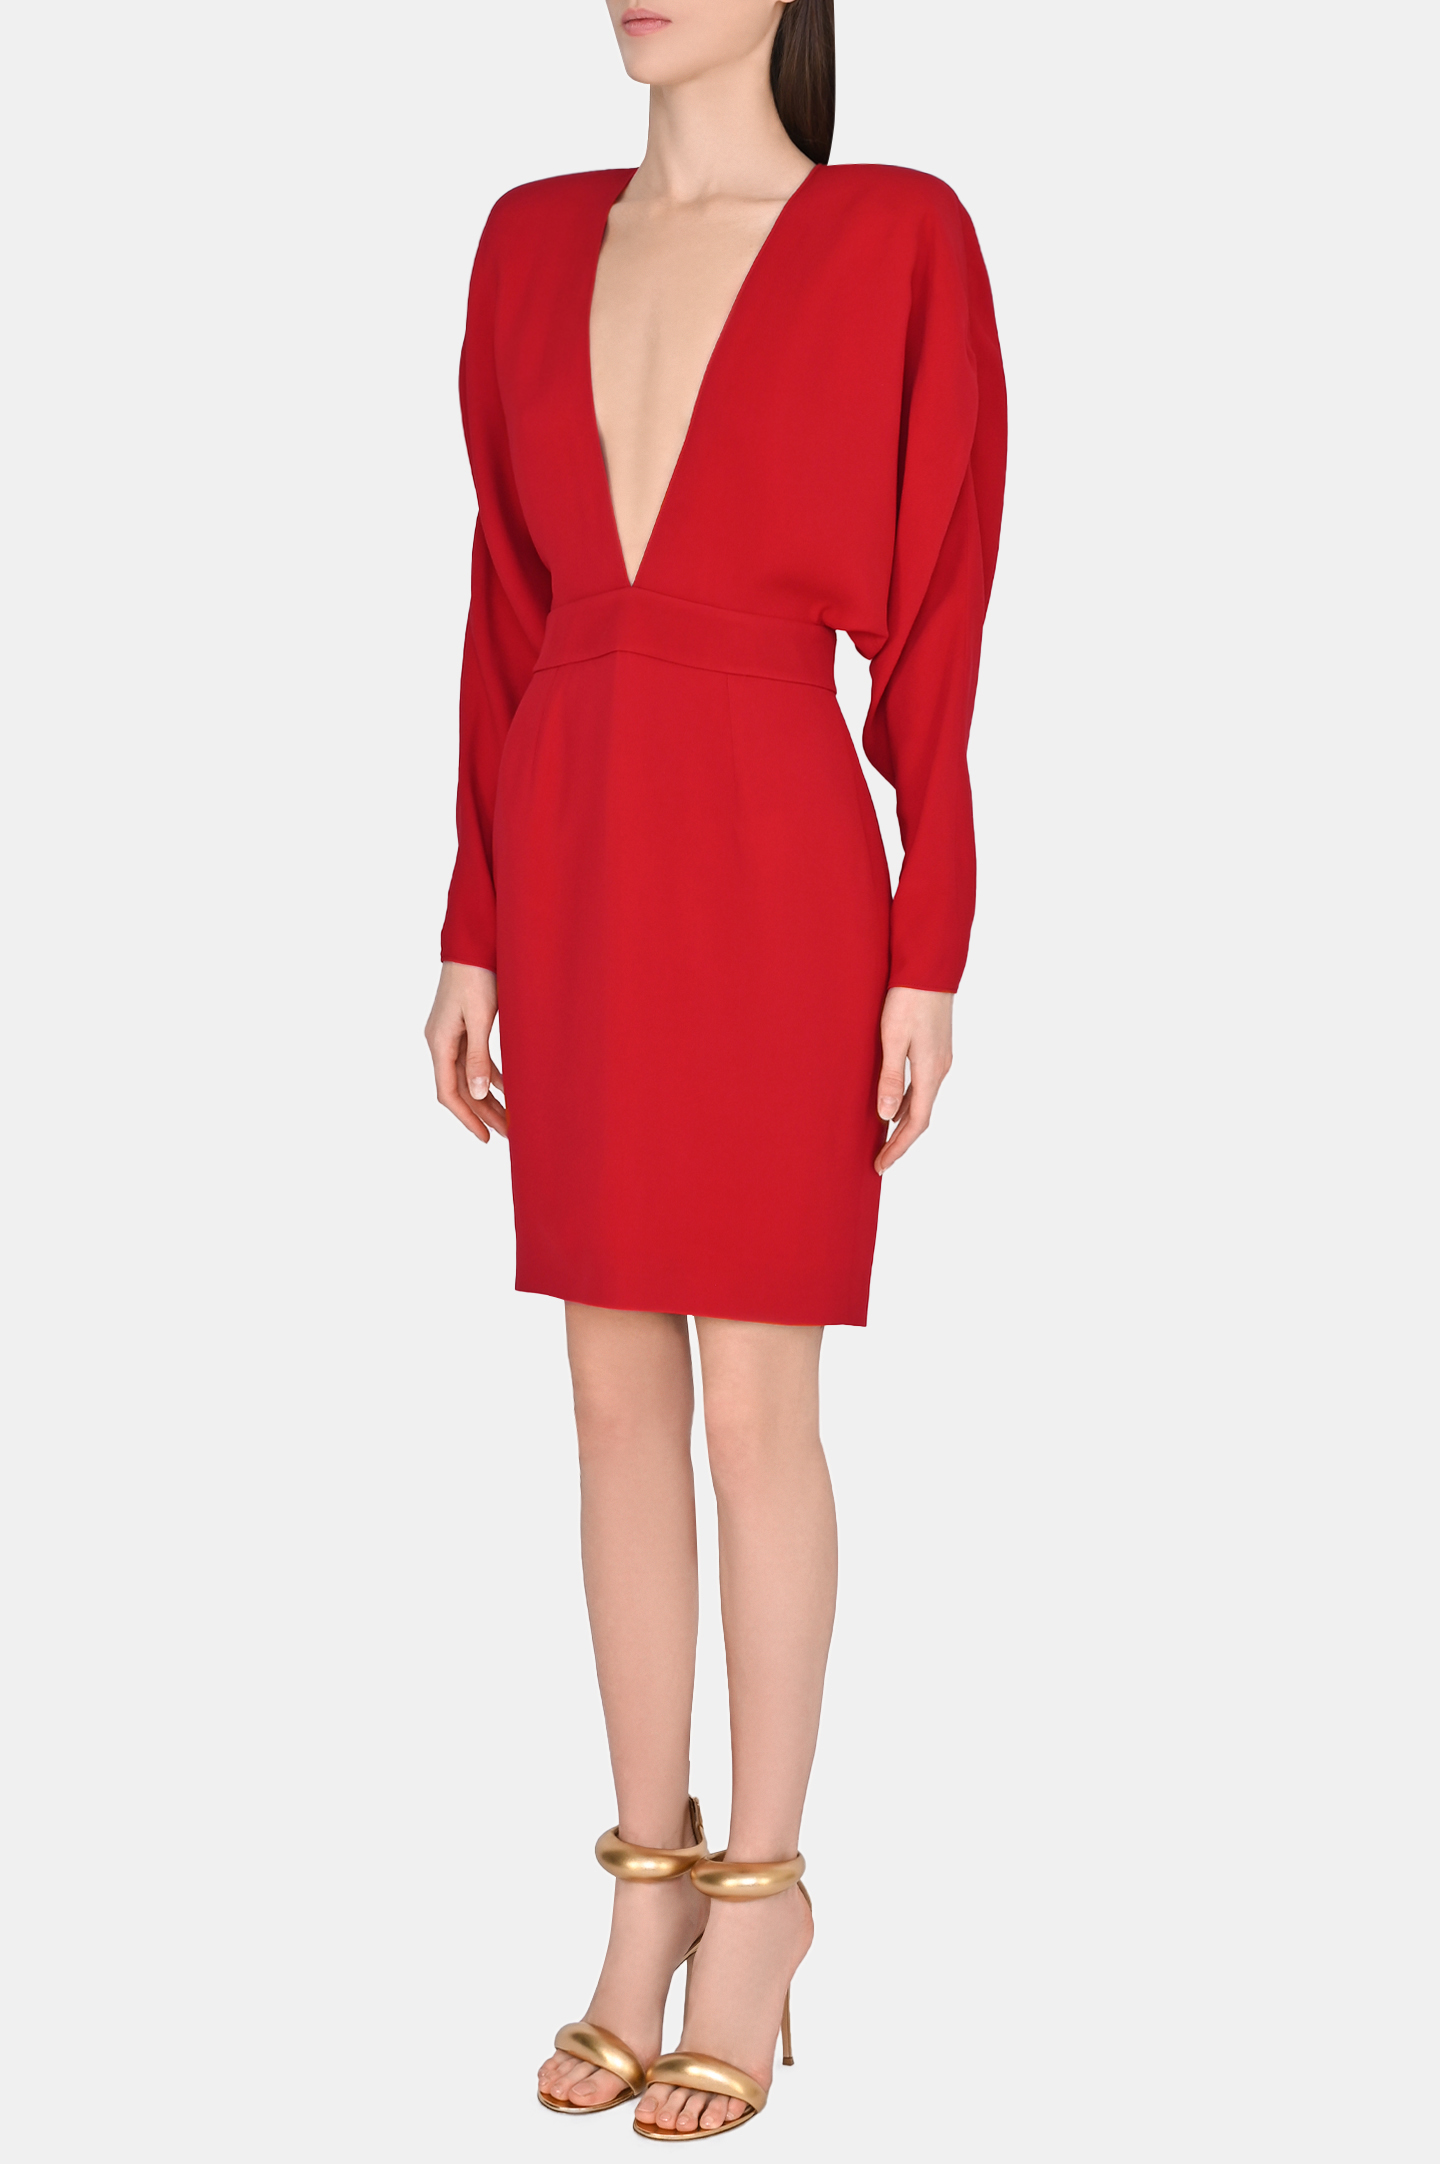 Платье ALEXANDRE VAUTHIER 231DR18341810, цвет: Красный, Женский